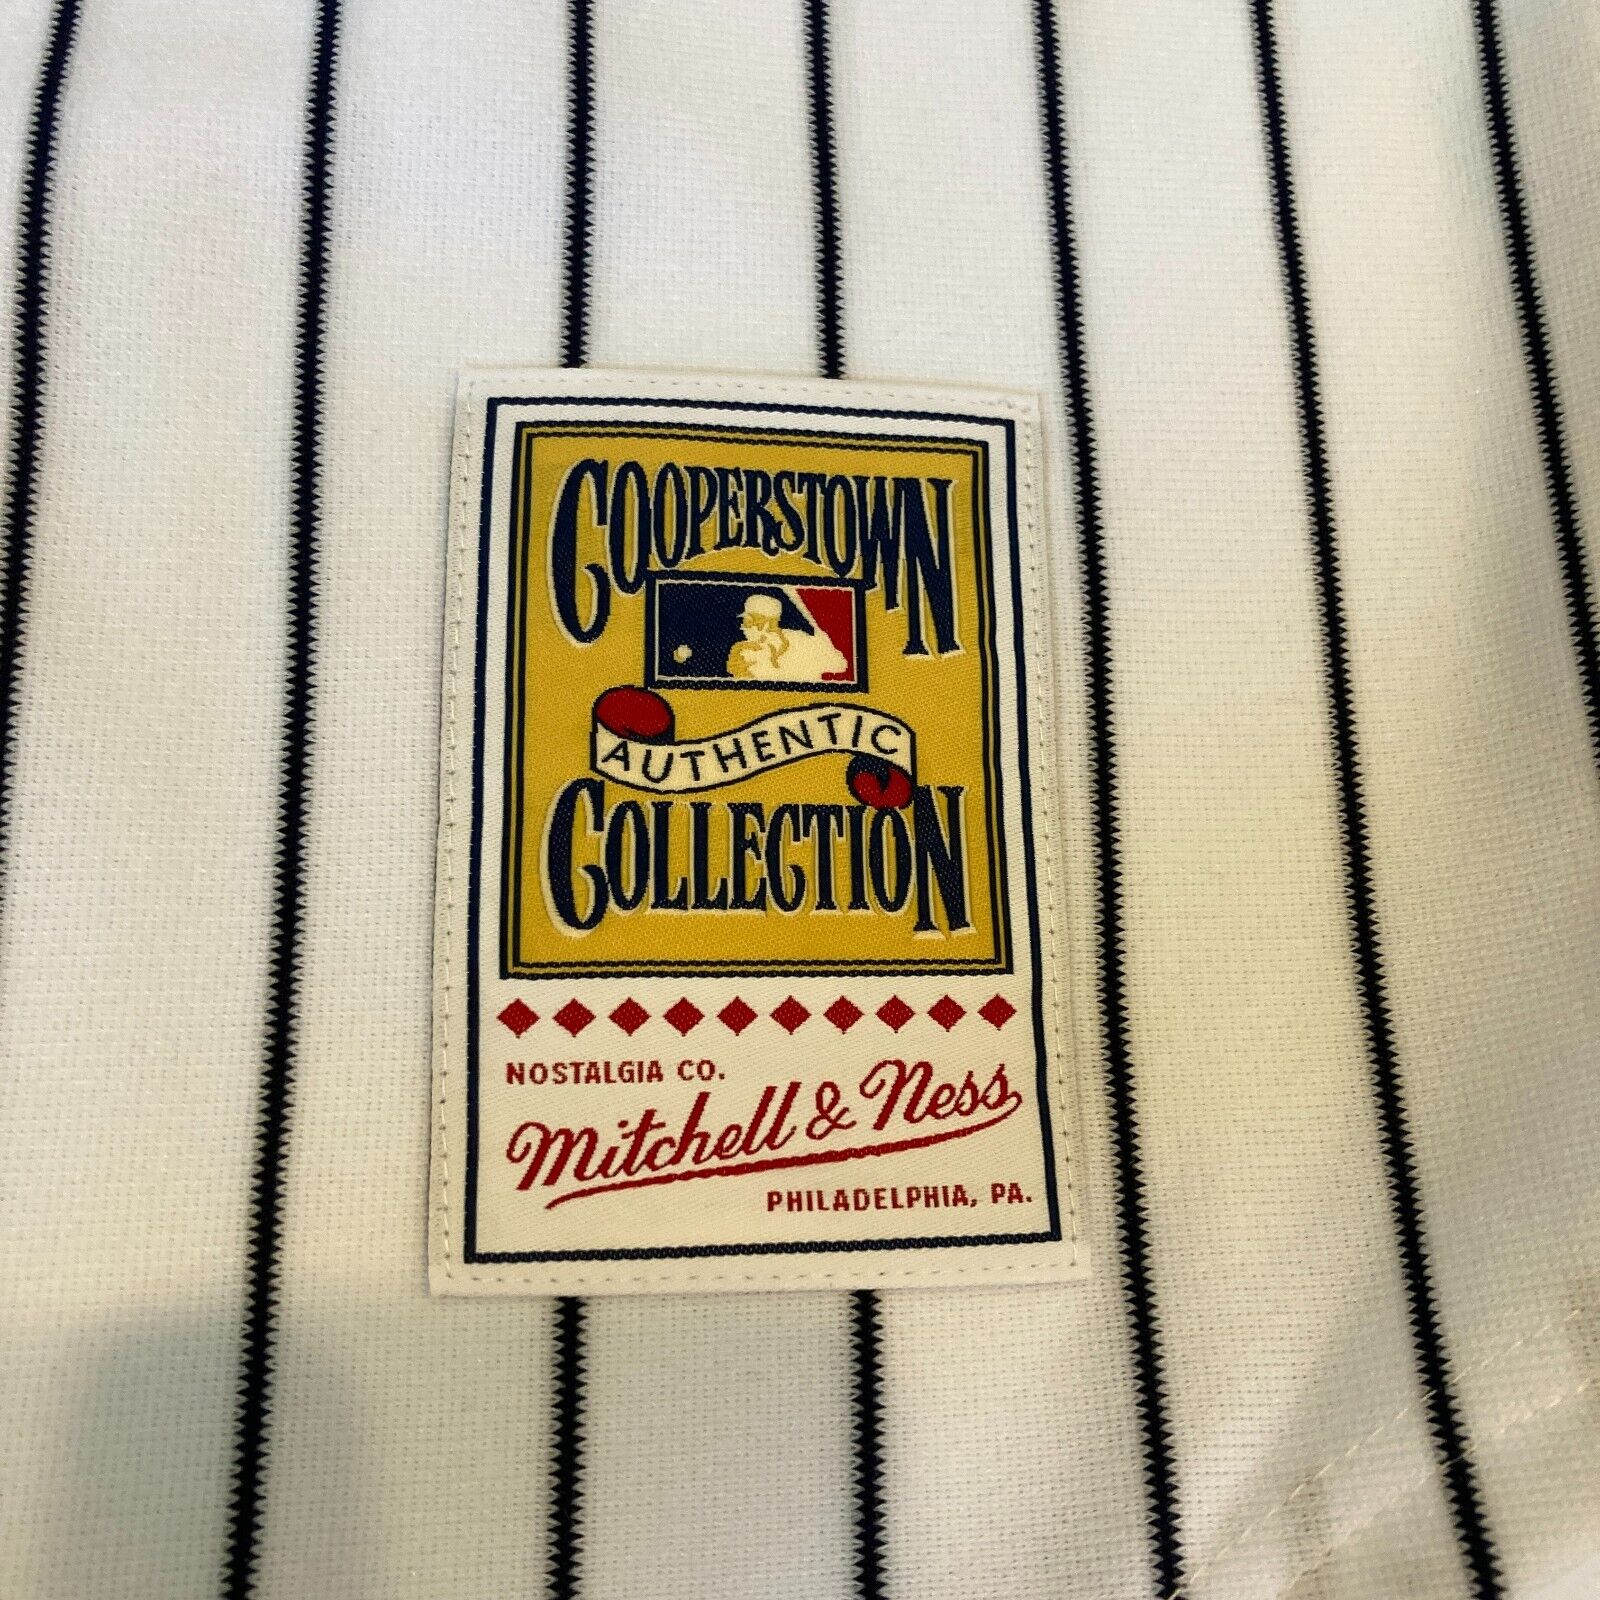 Shop Mitchell & Ness New York Yankees Mariano Rivera 1995